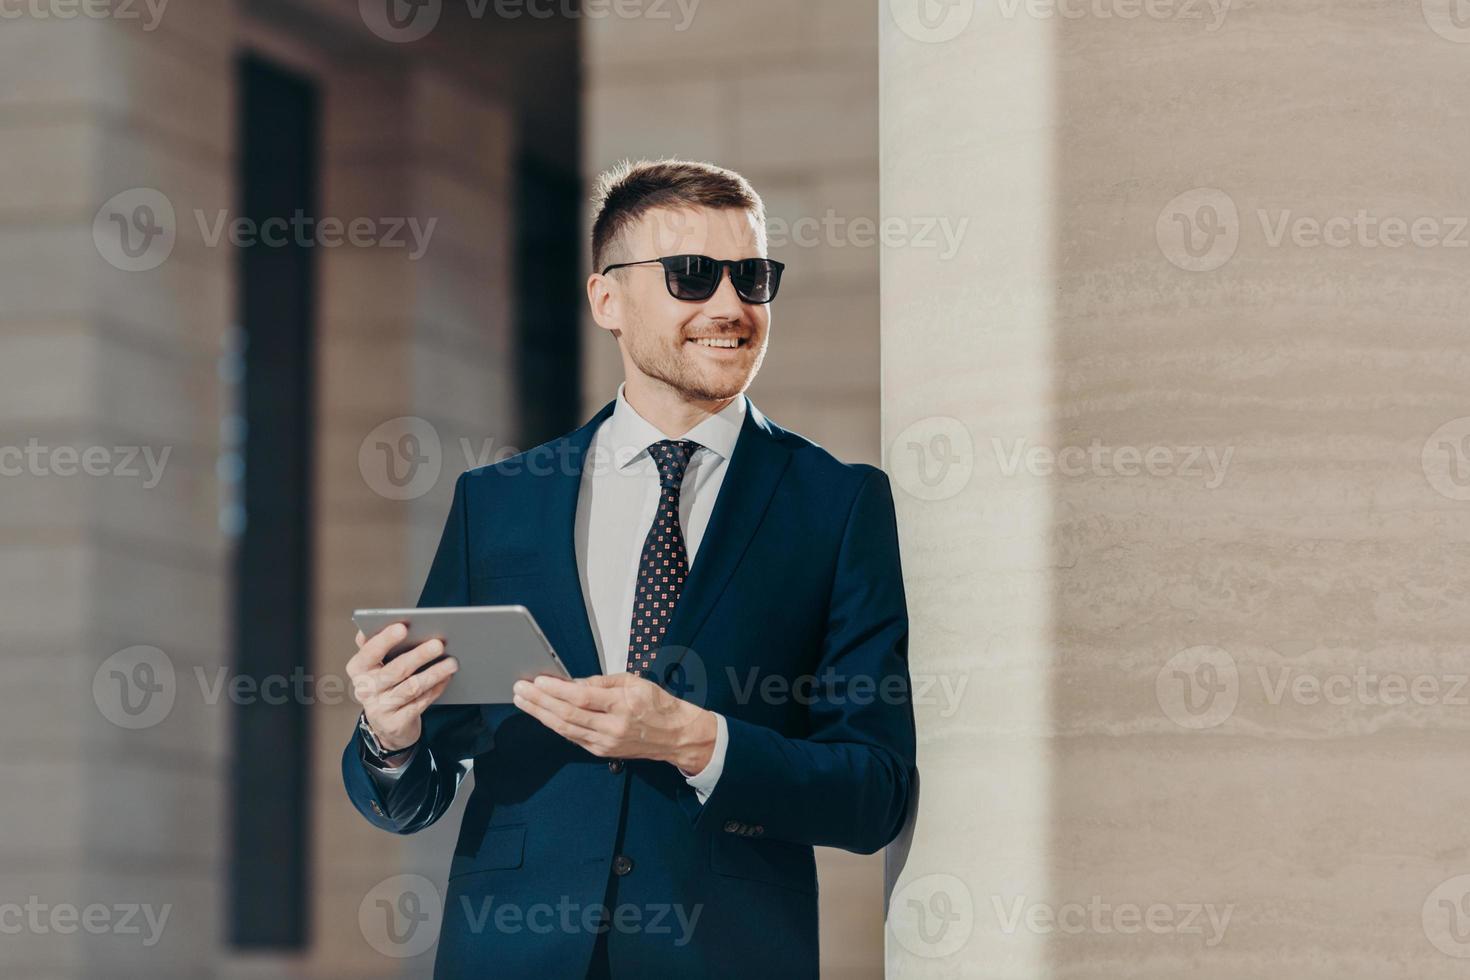 el retrato de un apuesto joven empleador sostiene una tableta digital, está conectado a Internet inalámbrico, usa gafas de sol y traje formal, tiene tiempo libre después de un duro día de trabajo. personas y concepto de carrera foto